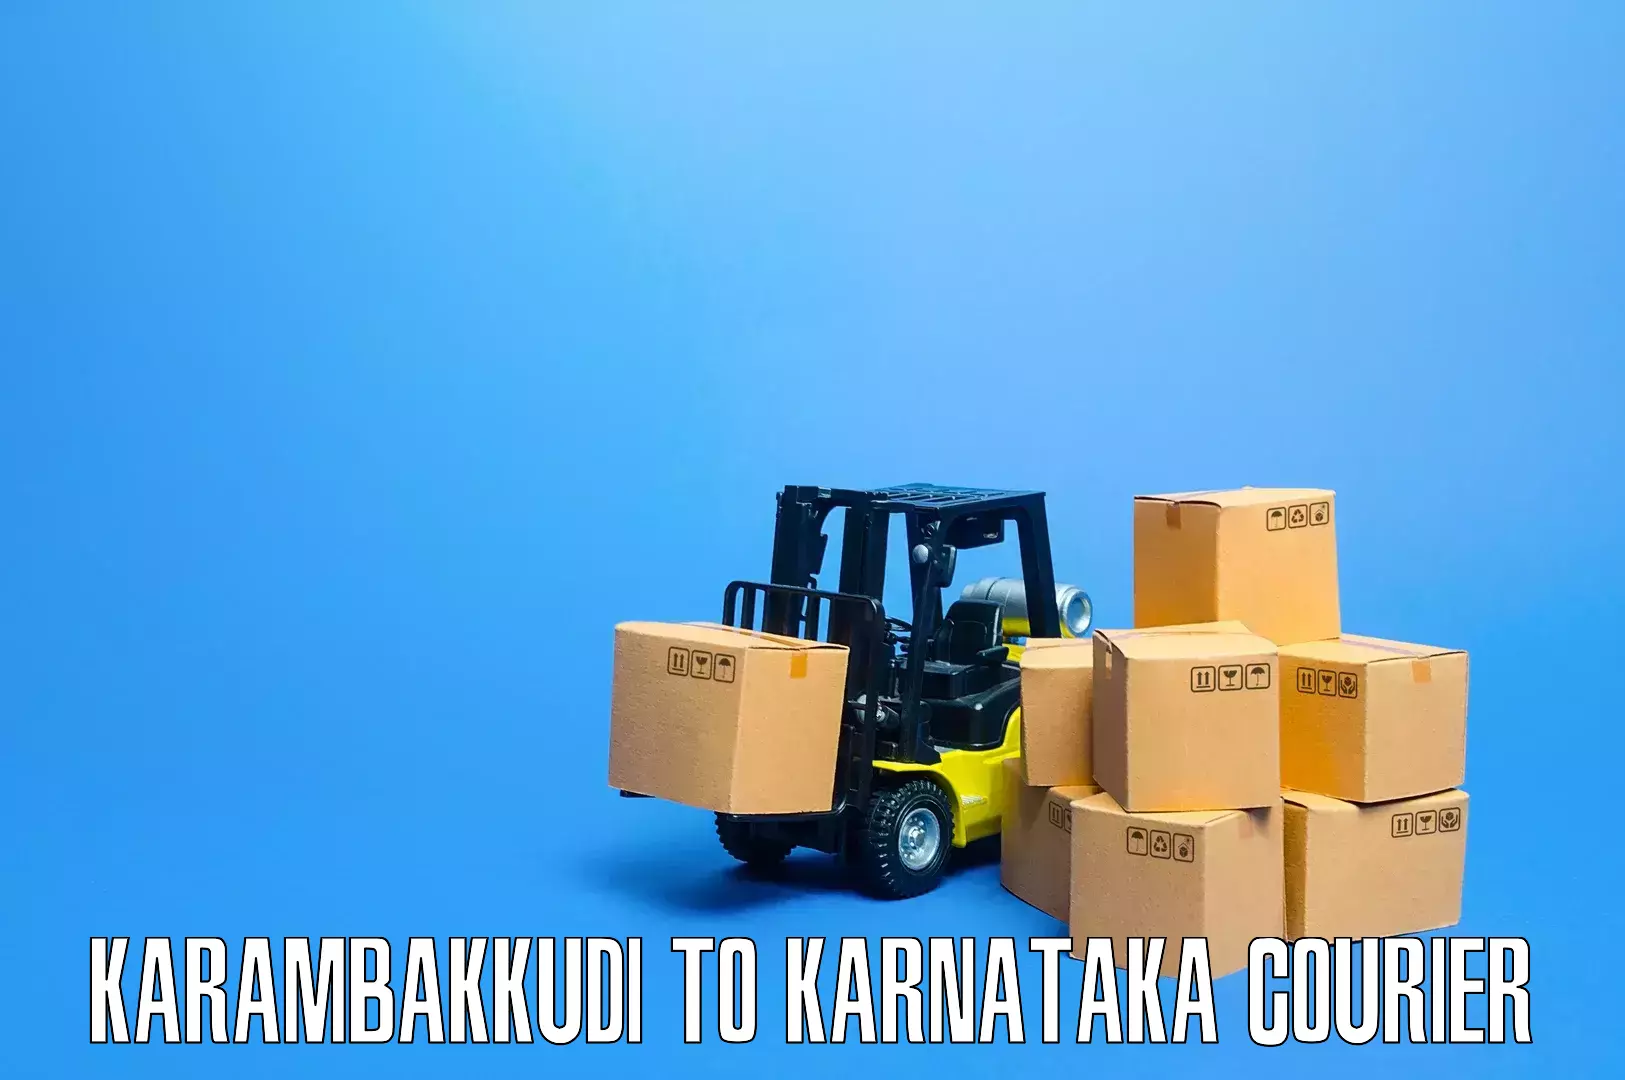 Professional movers and packers Karambakkudi to Nelamangala